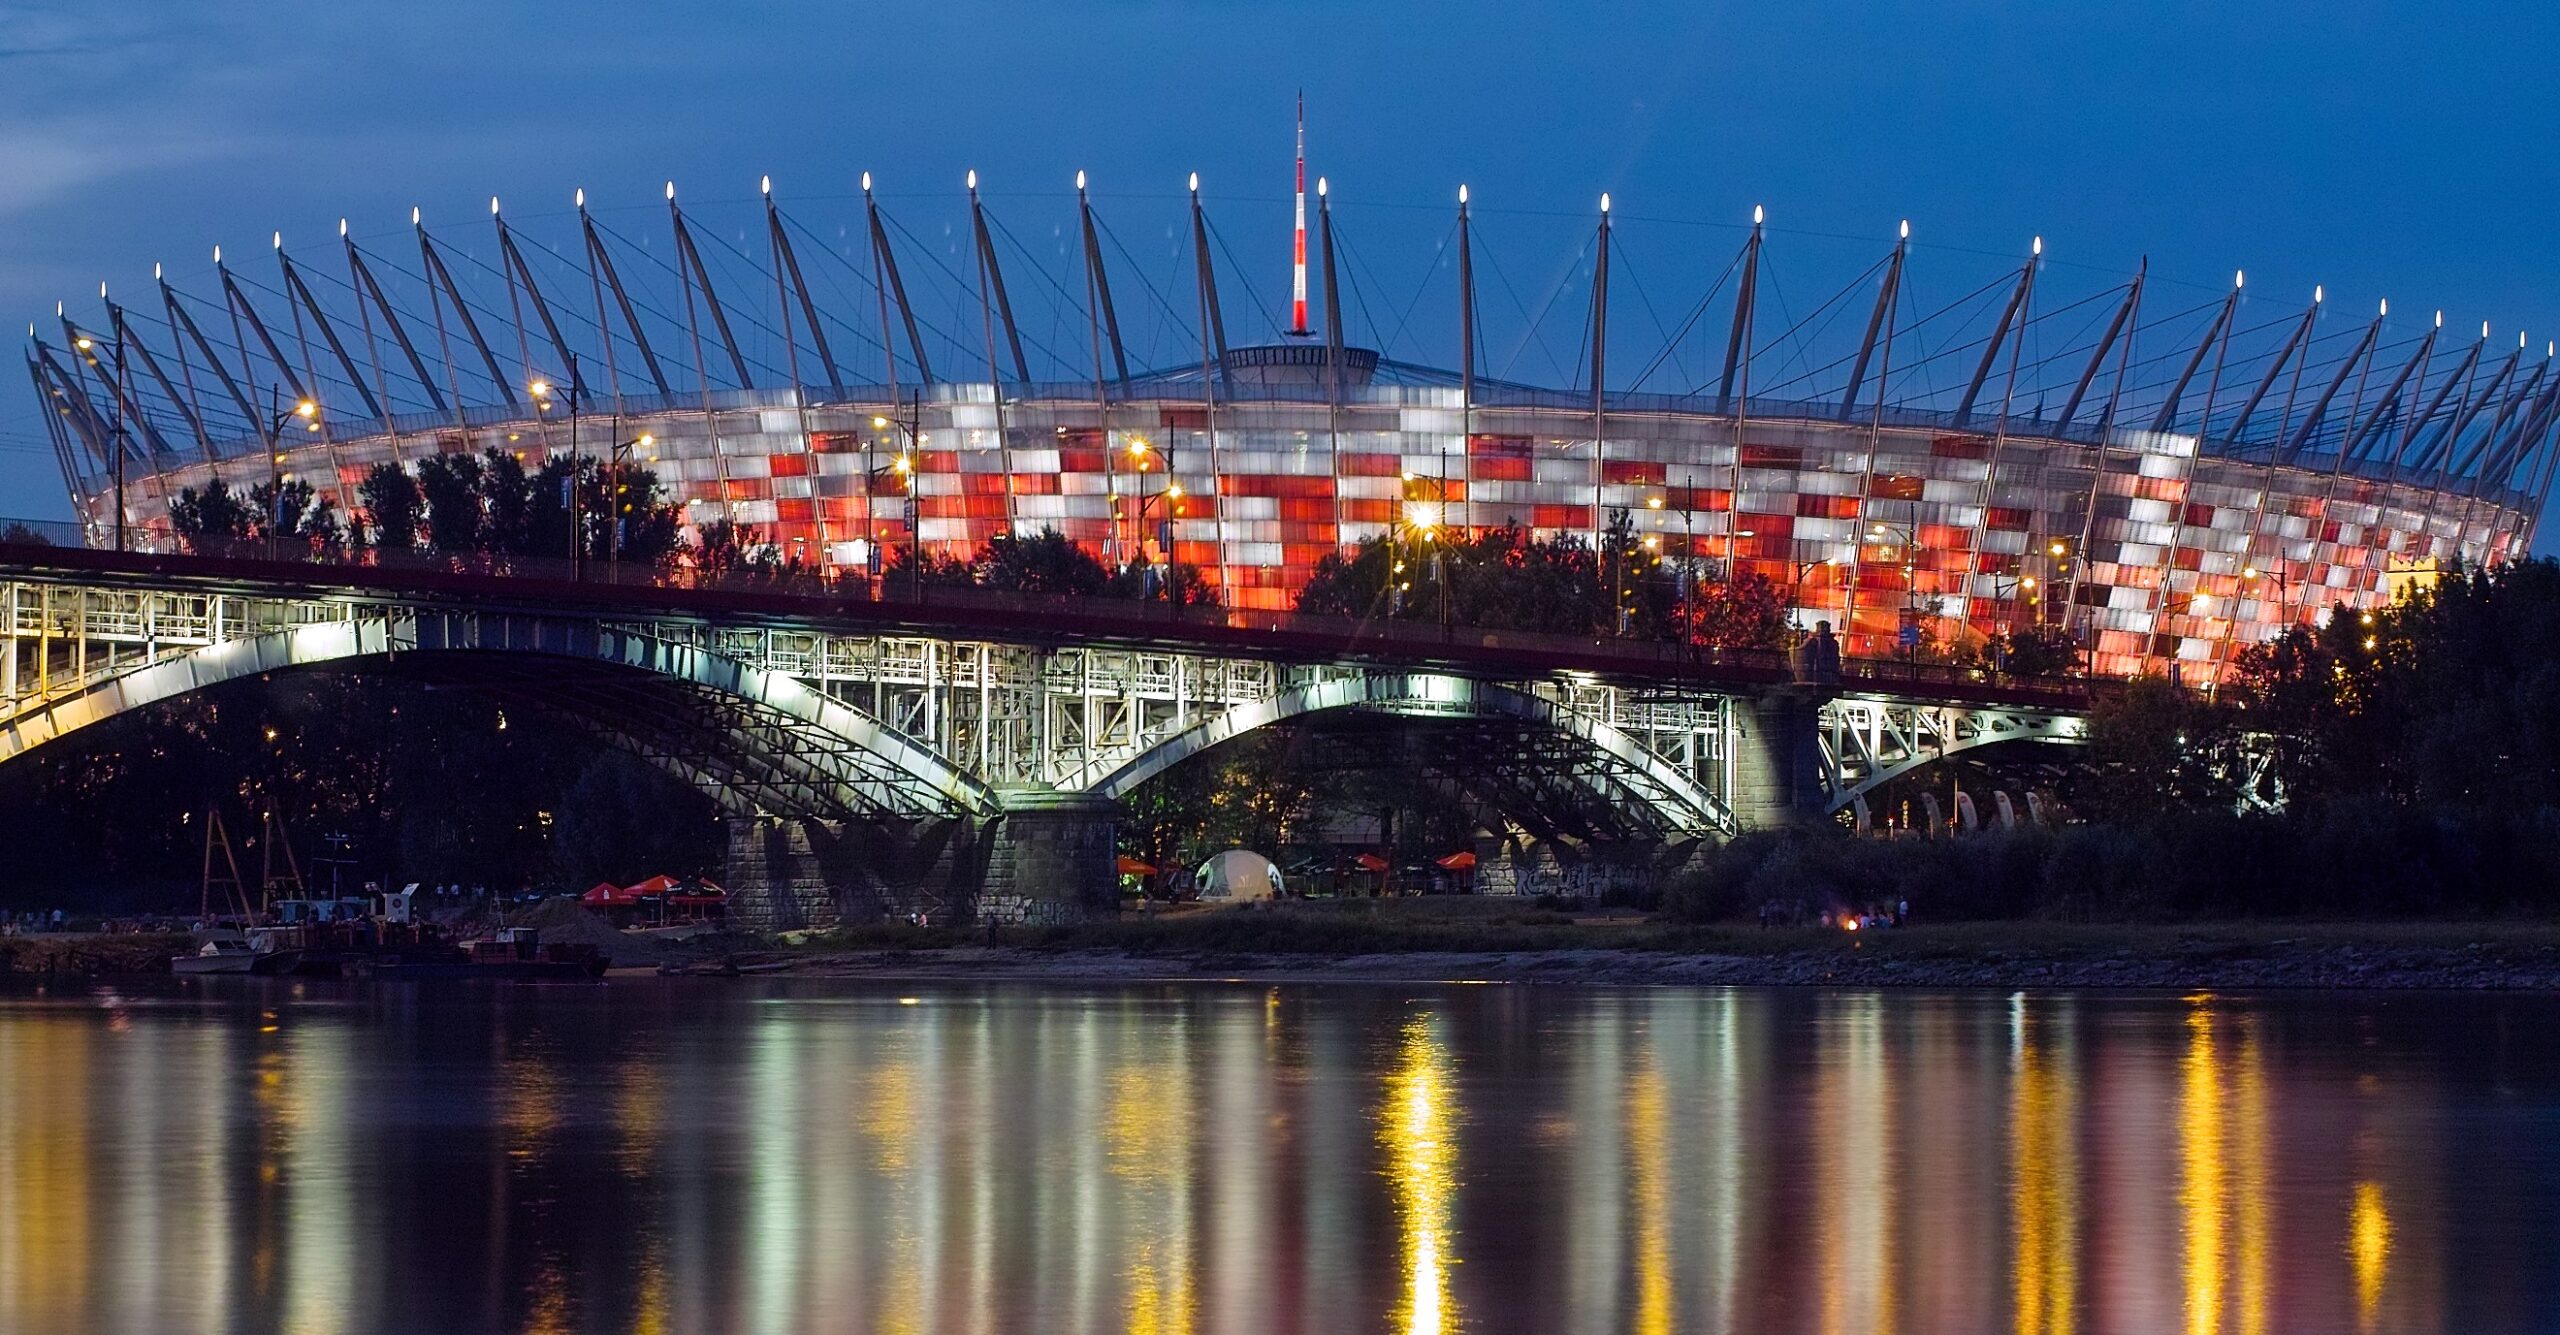 El estadio nacional de Polonia fue cerrado por un defecto en el techo, lo que obligó a posponer el partido contra Chile